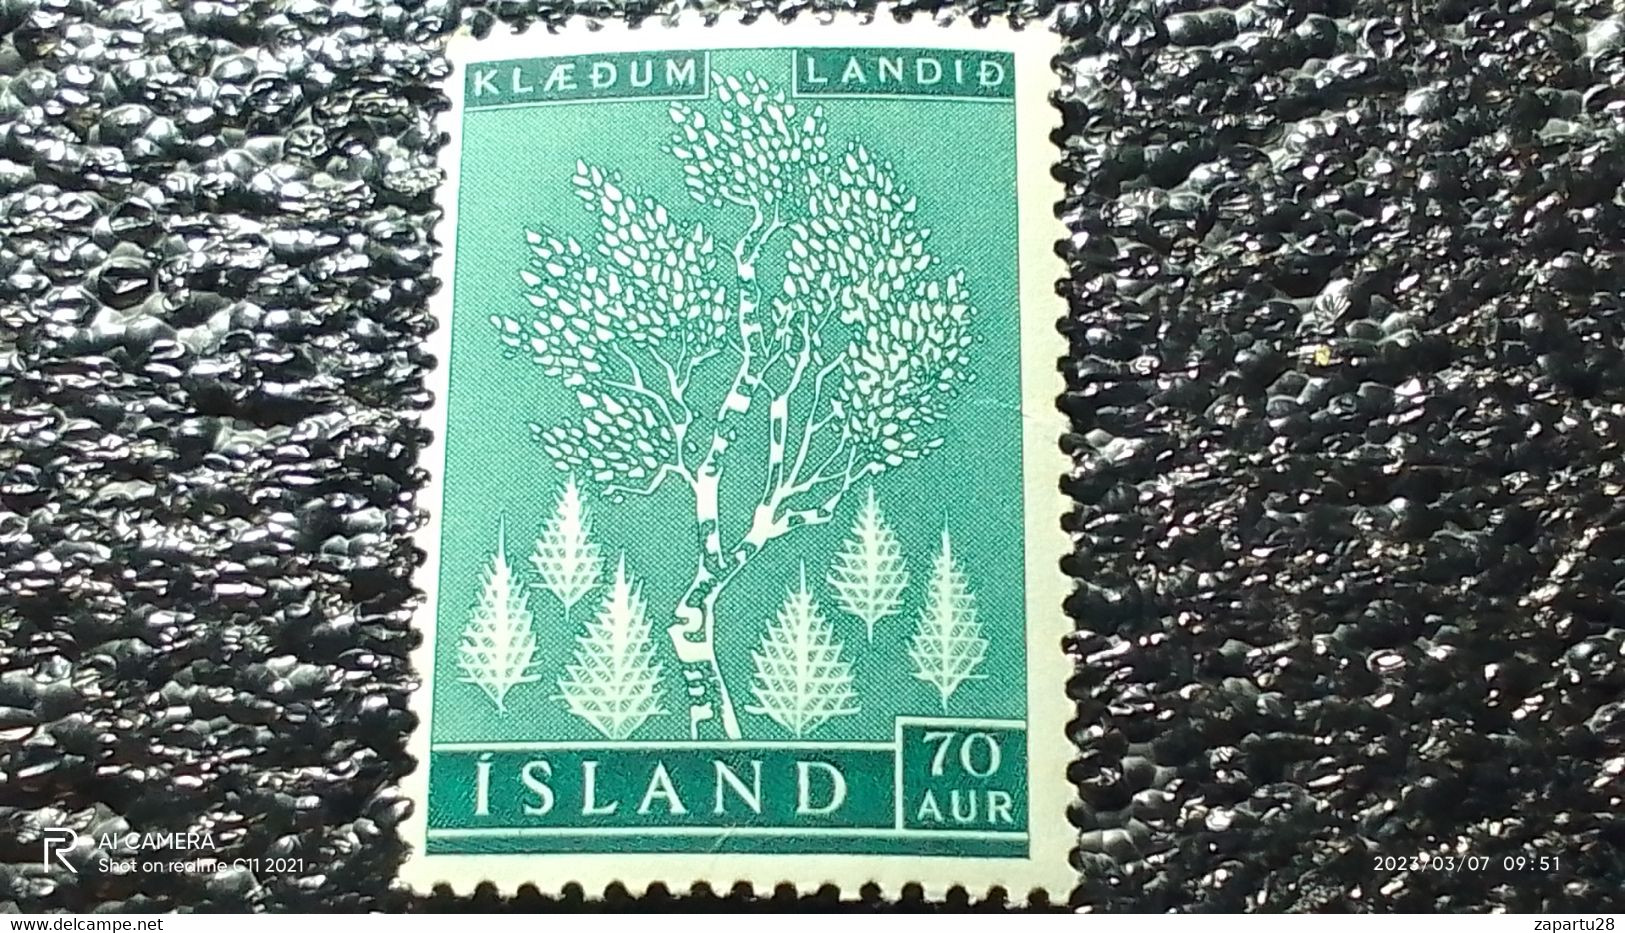 ISLAND-1950- 1960        70AUR   UNUSED - Nuevos